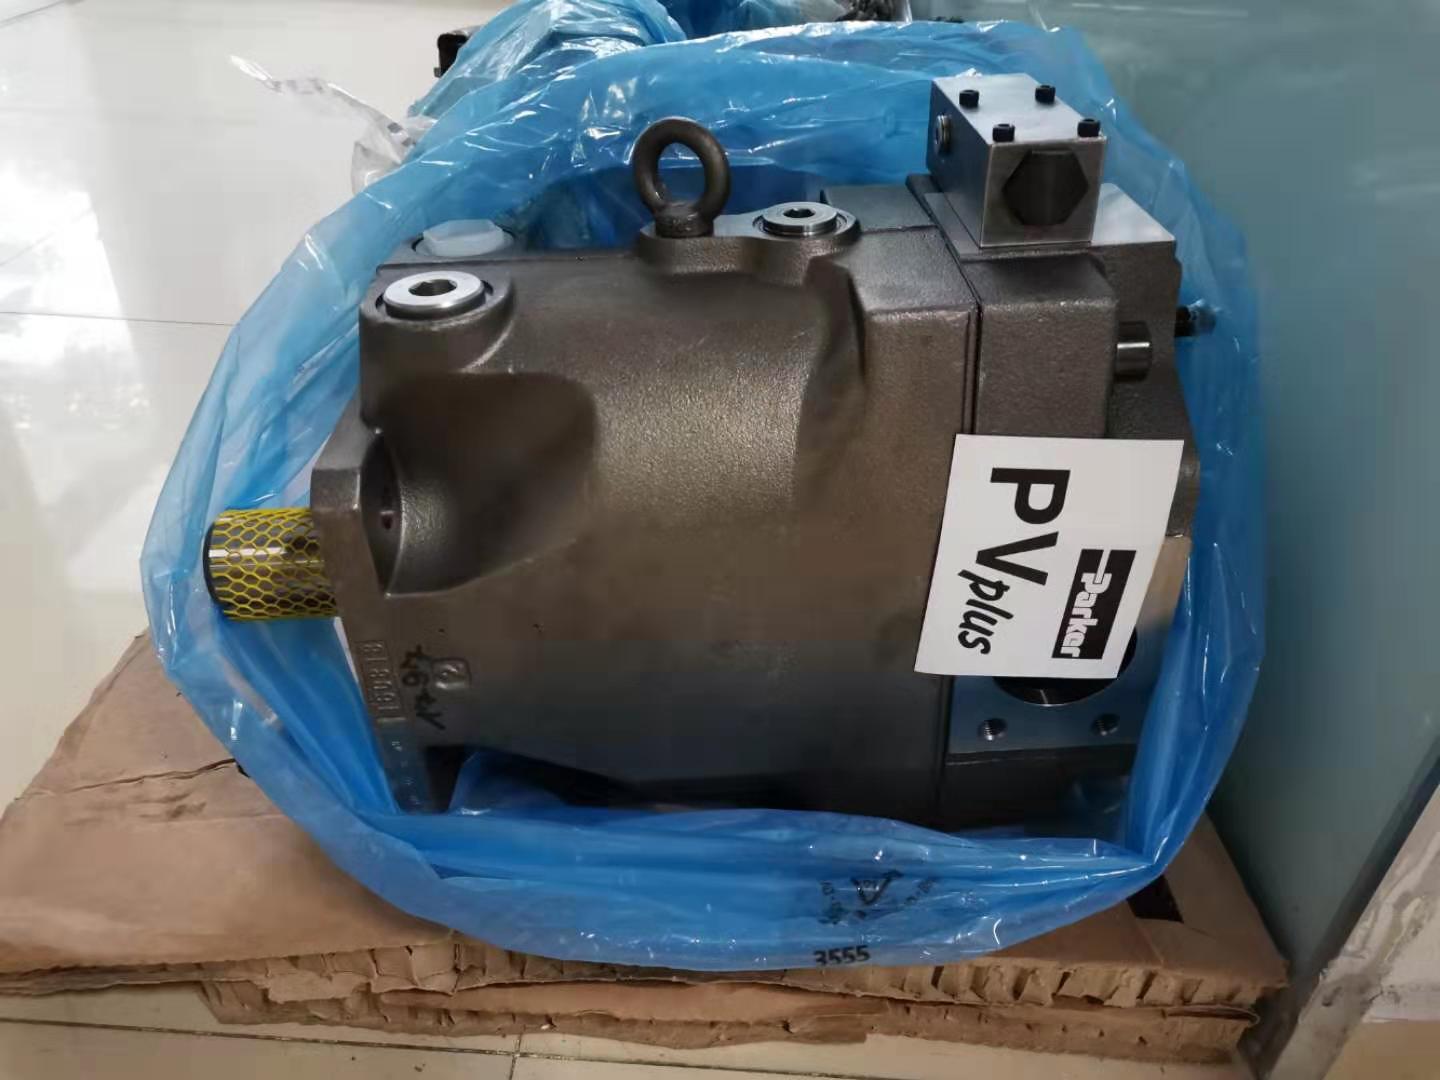 PV140R1K1T1NMMC派克柱塞泵